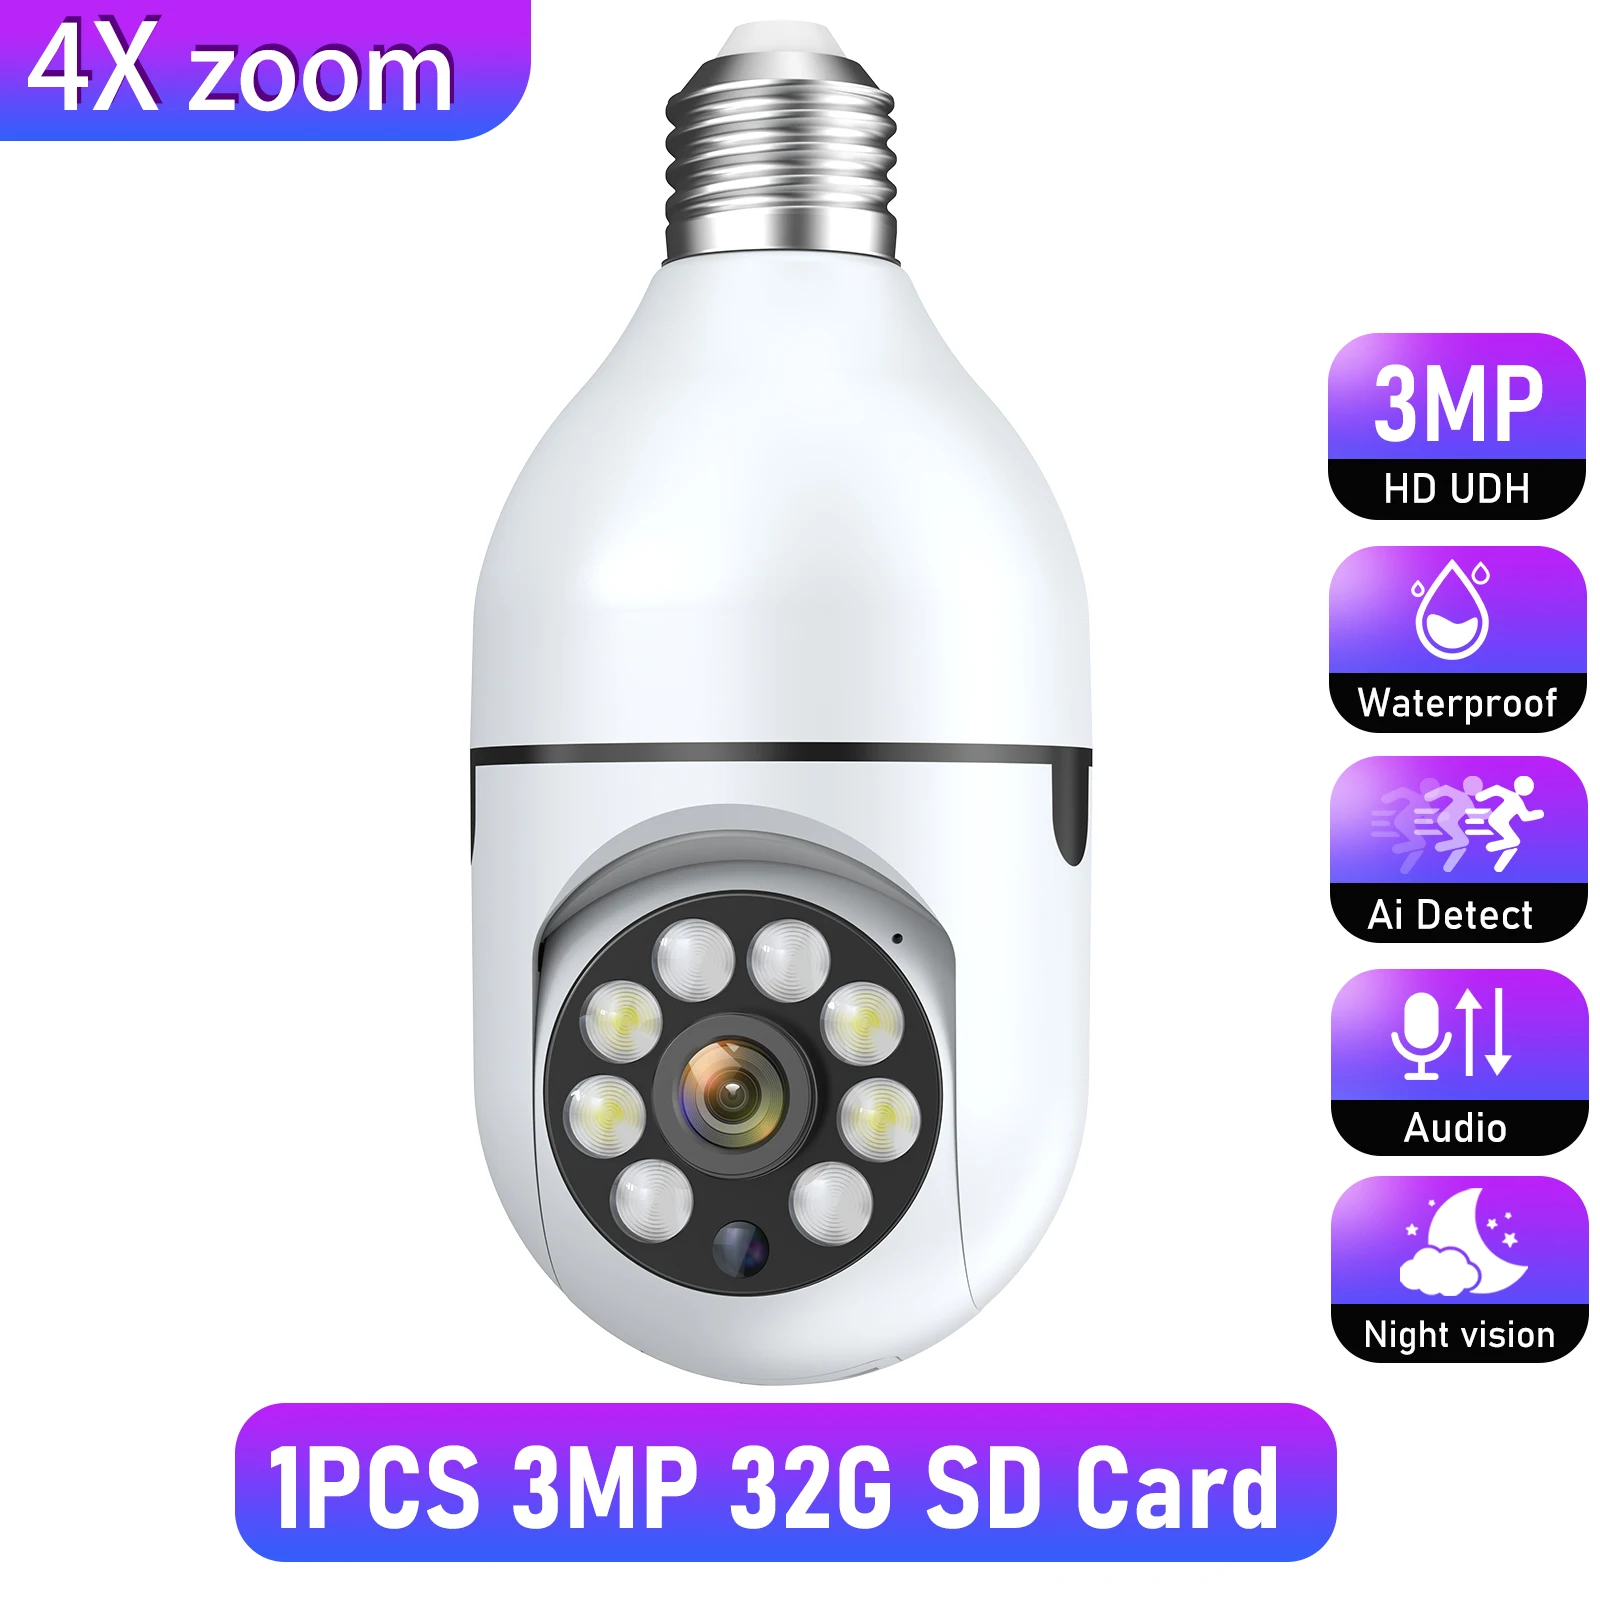 1PCS 3MP 32G SD Card